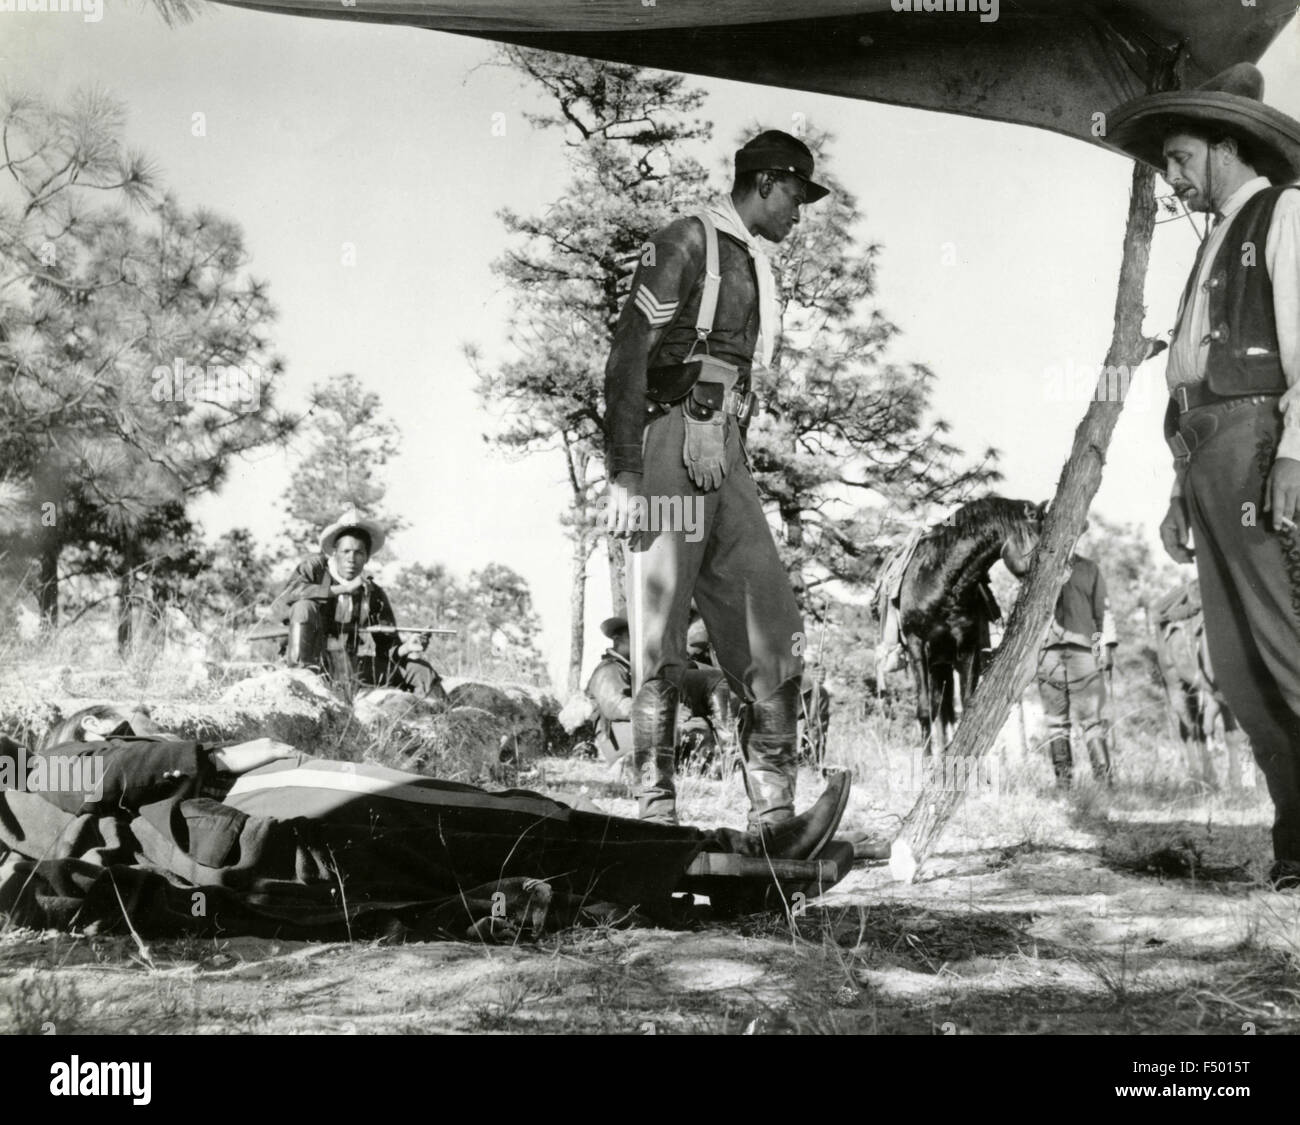 L'attore americano Robert Mitchum in una scena del film "Il meraviglioso paese" Foto Stock